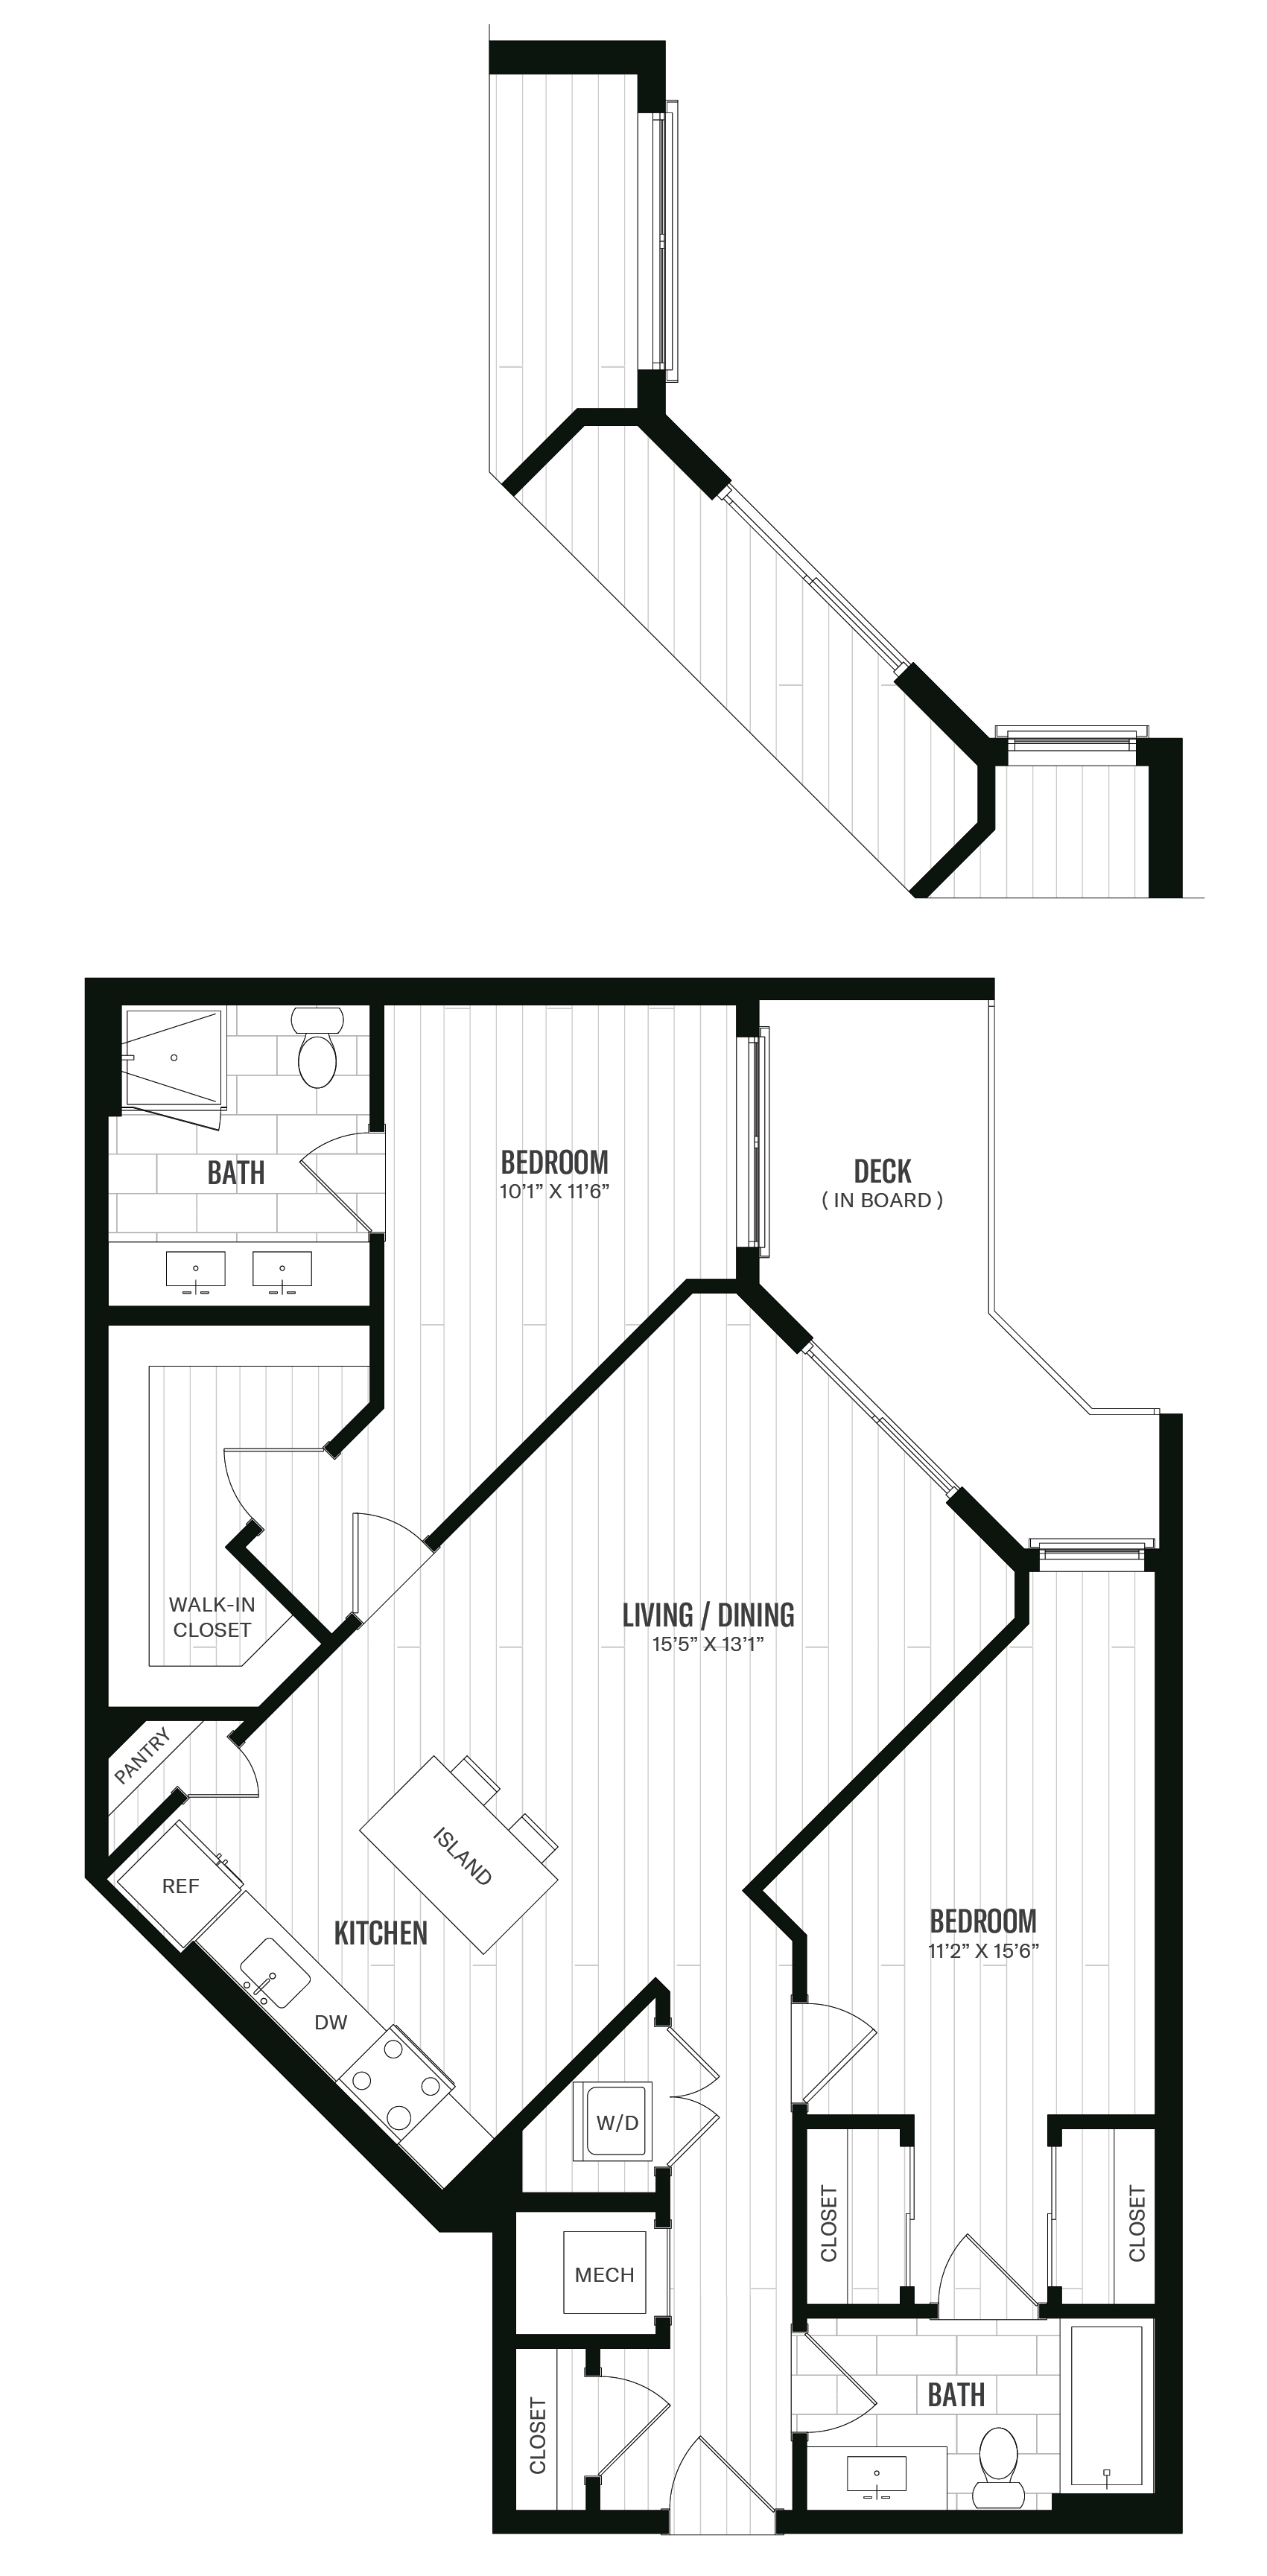 Floorplan image of unit 257